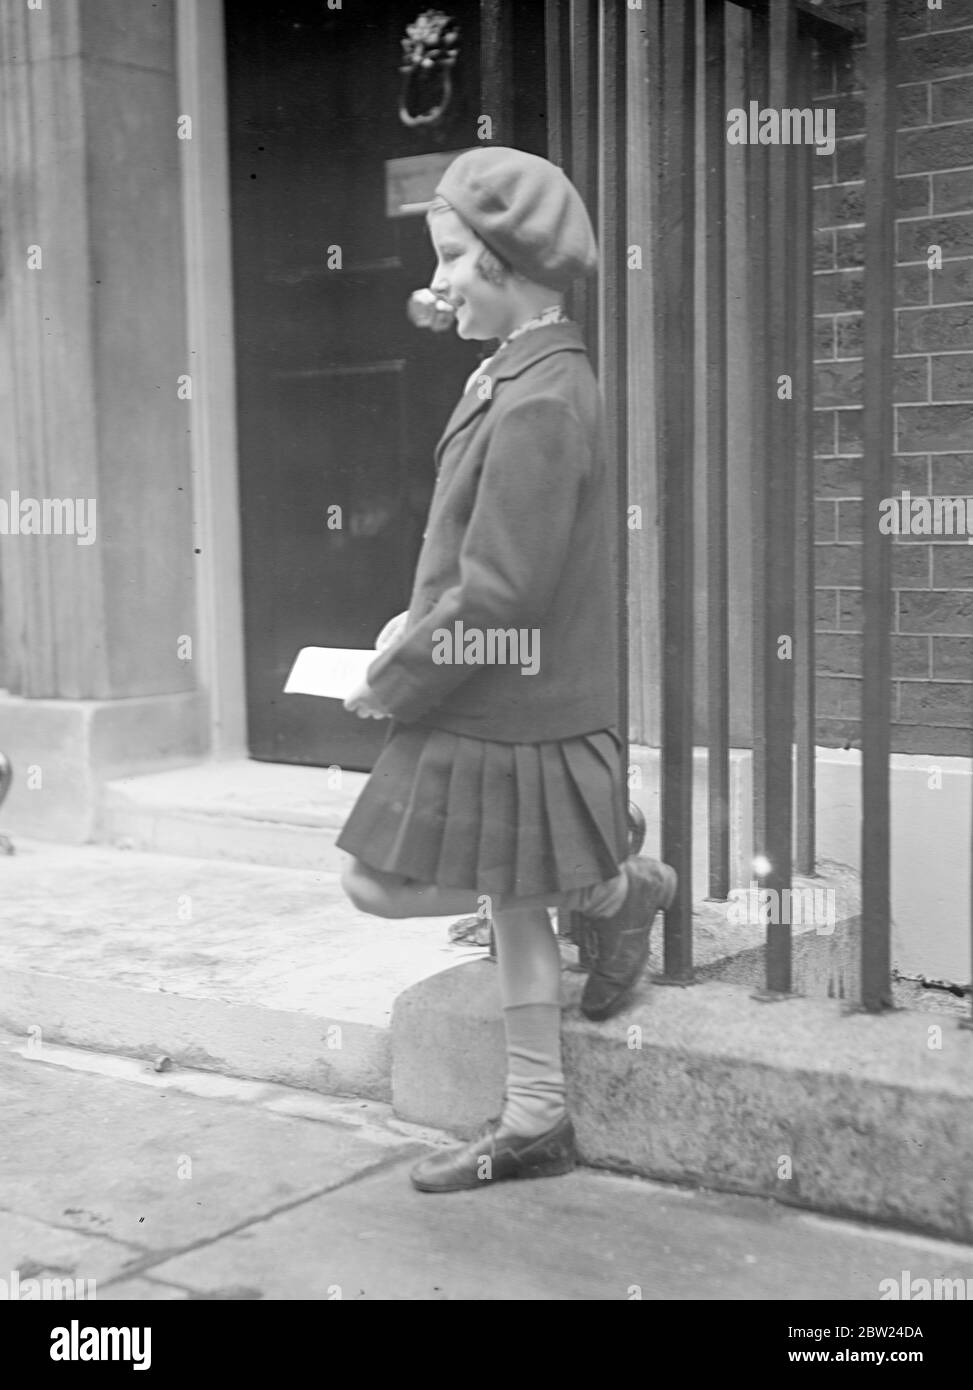 Dorothy, sieben Jahre alt, wartet außerhalb Nr. 10, um Brief an Frau Chamberlain zu übergeben. In der Downing Street 10 erhalten Neville Chamberlain und seine Frau Hunderte Dankesbotschaften und Glückwünsche. Ein kleines Mädchen, Dorothy Friend, 7 Jahre alt, wartete vor Nr. 10, um Frau Chamberlain persönlich ihren Brief zu übergeben. Oktober 1938 Stockfoto